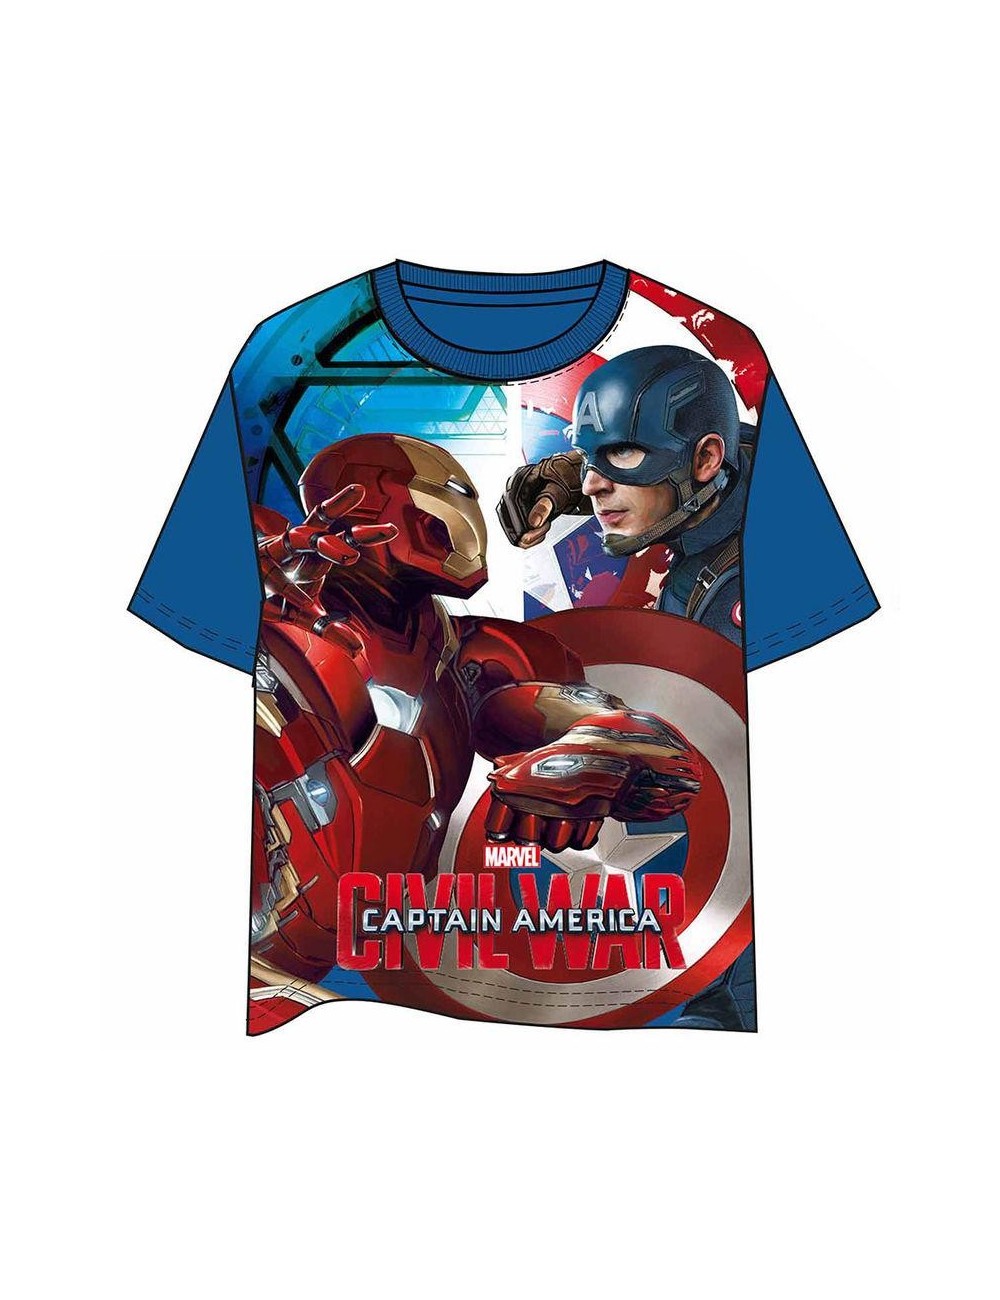 Tricou Captain America: Civil War 4-10 ani, albastru